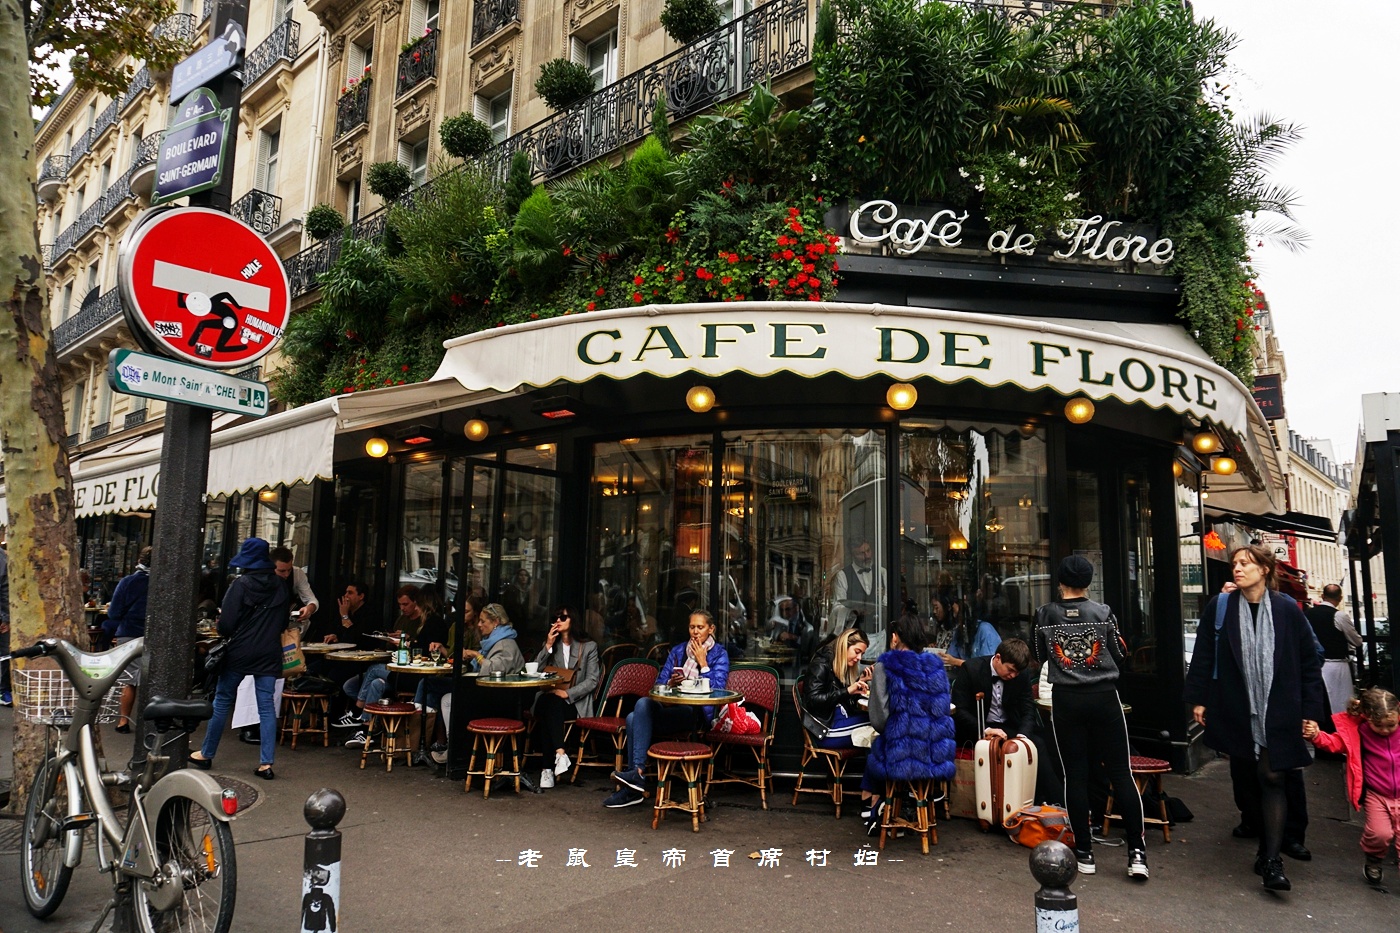 巴黎最美咖啡馆,装修百年不变设立同名文学奖,毕加索都是粉丝